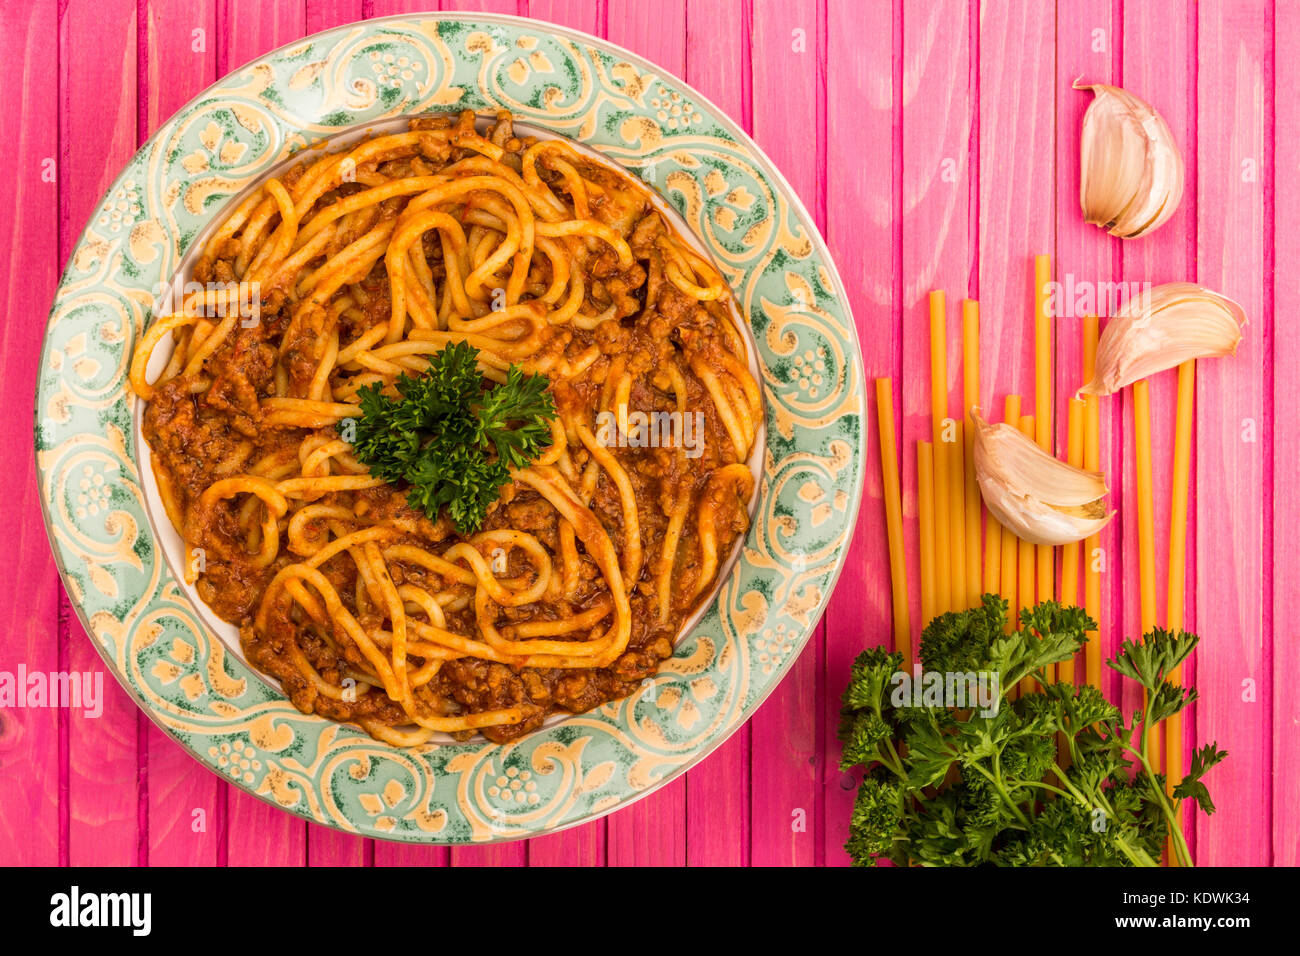 Stile italiano spaghetti alla bolognese pasto con una ricca salsa di carne su una rosa di sfondo di legno Foto Stock